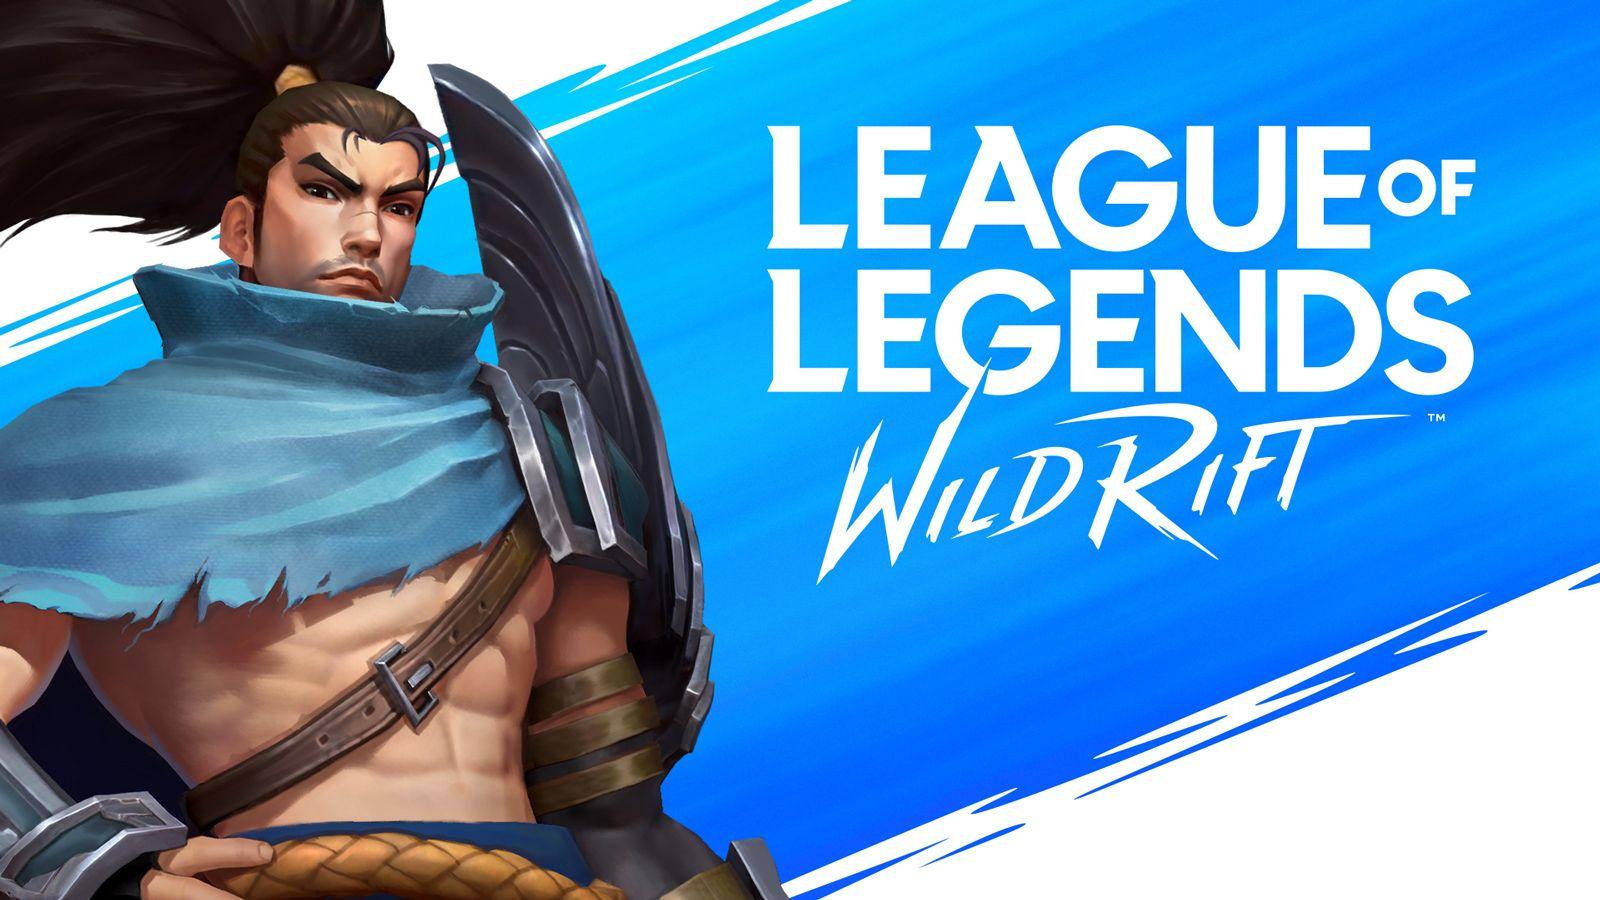 Video Game League of Legends: Wild Rift 4k Ultra HD Wallpaper